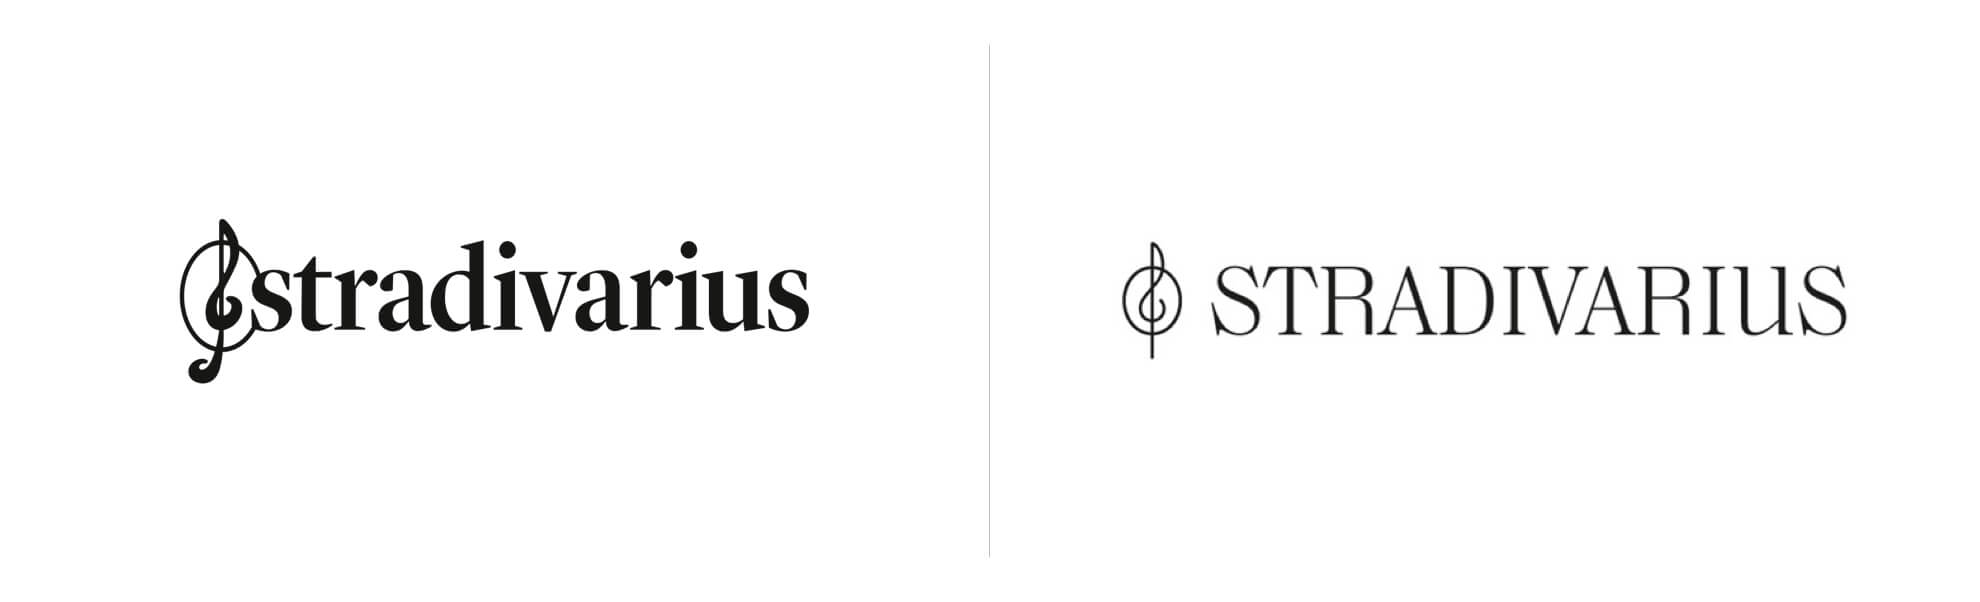 Stare i nowe logo sieci sklepów Stradivarius